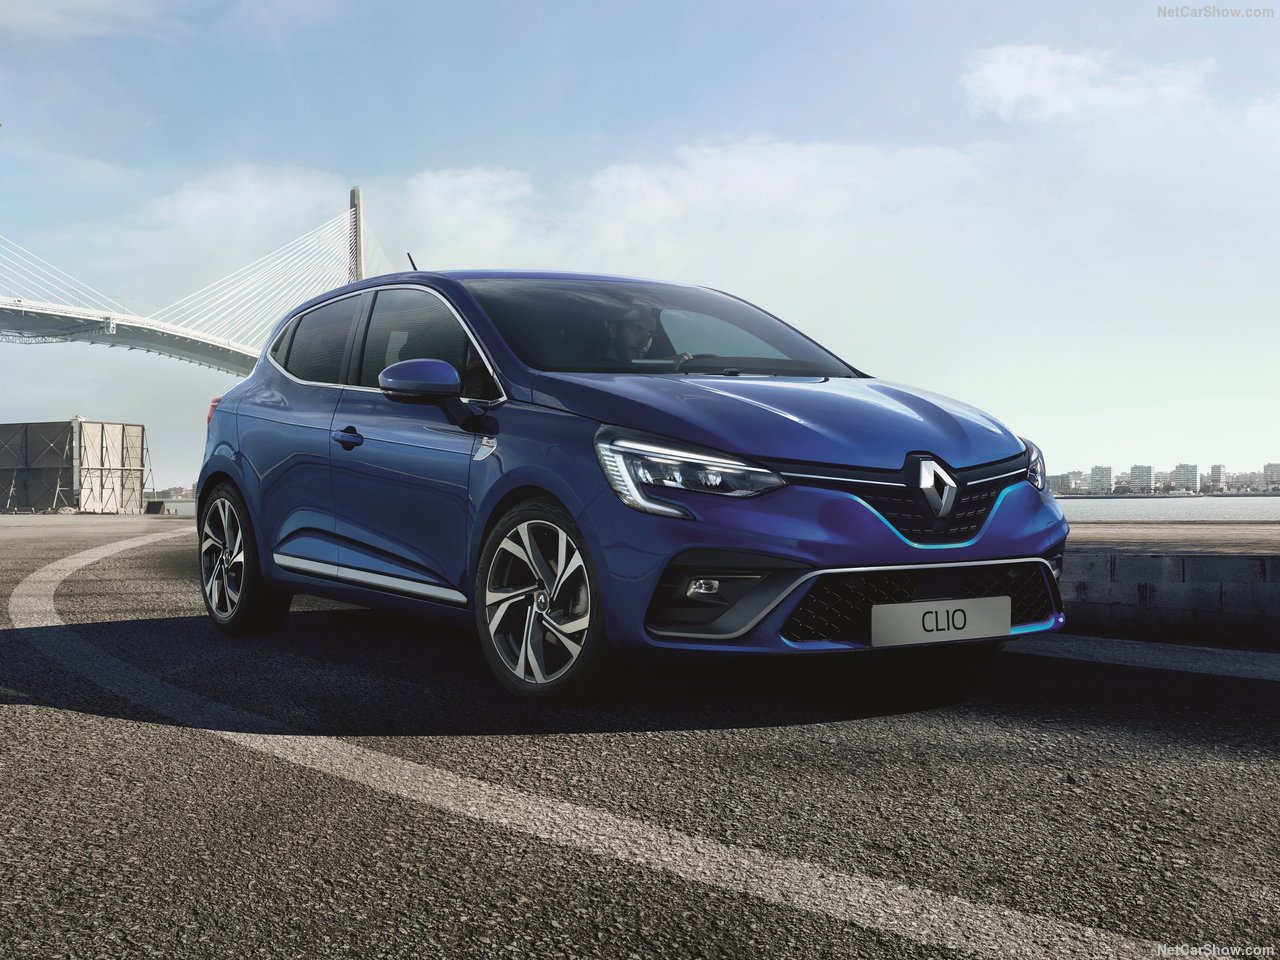 2019 Renault Clio tanıtıldı! Yeni Renault Clio’nun motor ve donanım özellikleri neler?